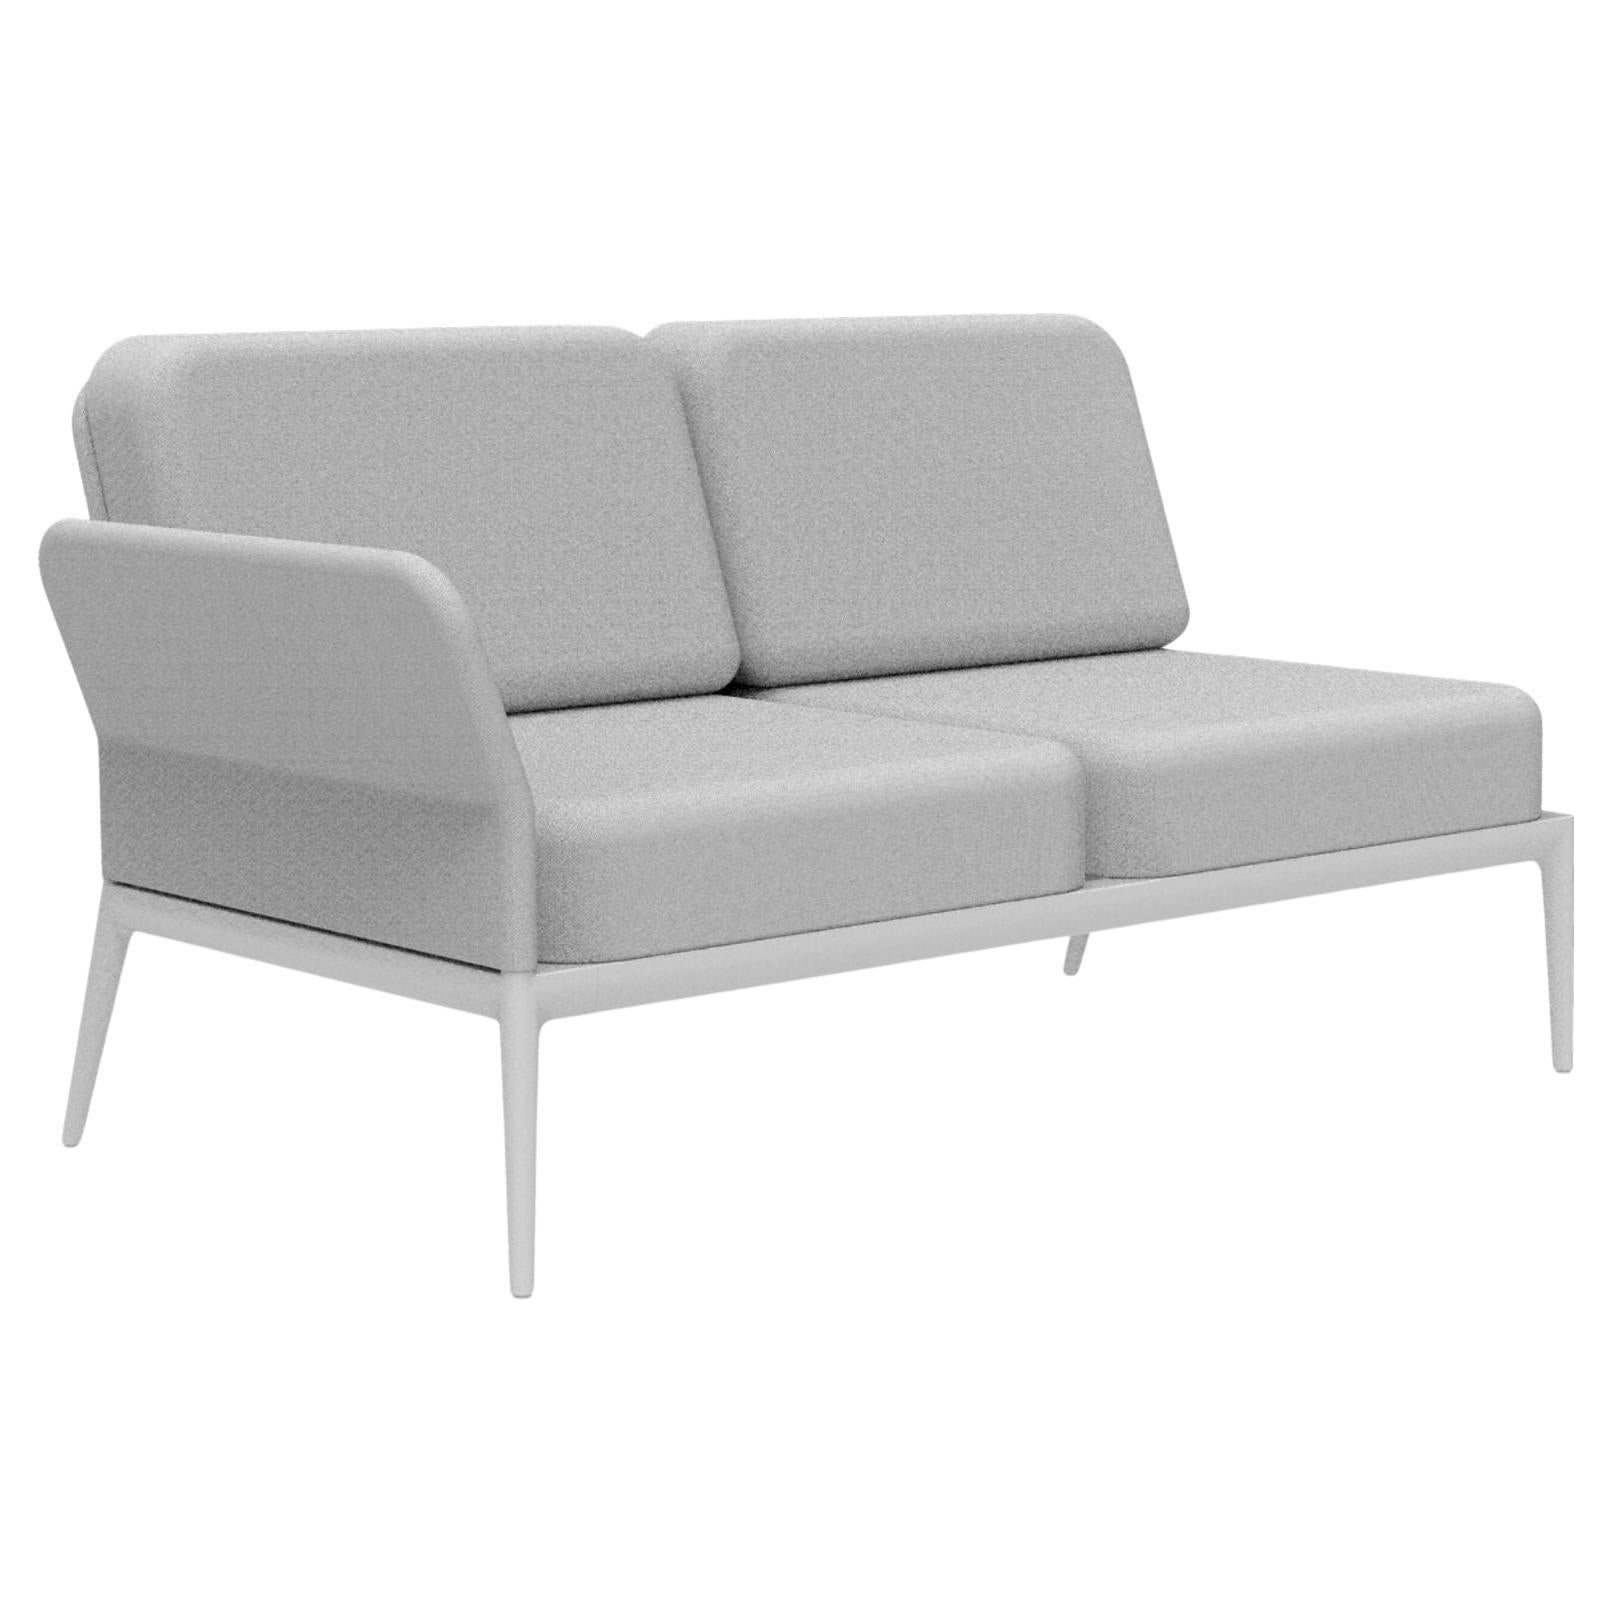 Weißes, doppelreihiges, modulares Sofa von MOWEE